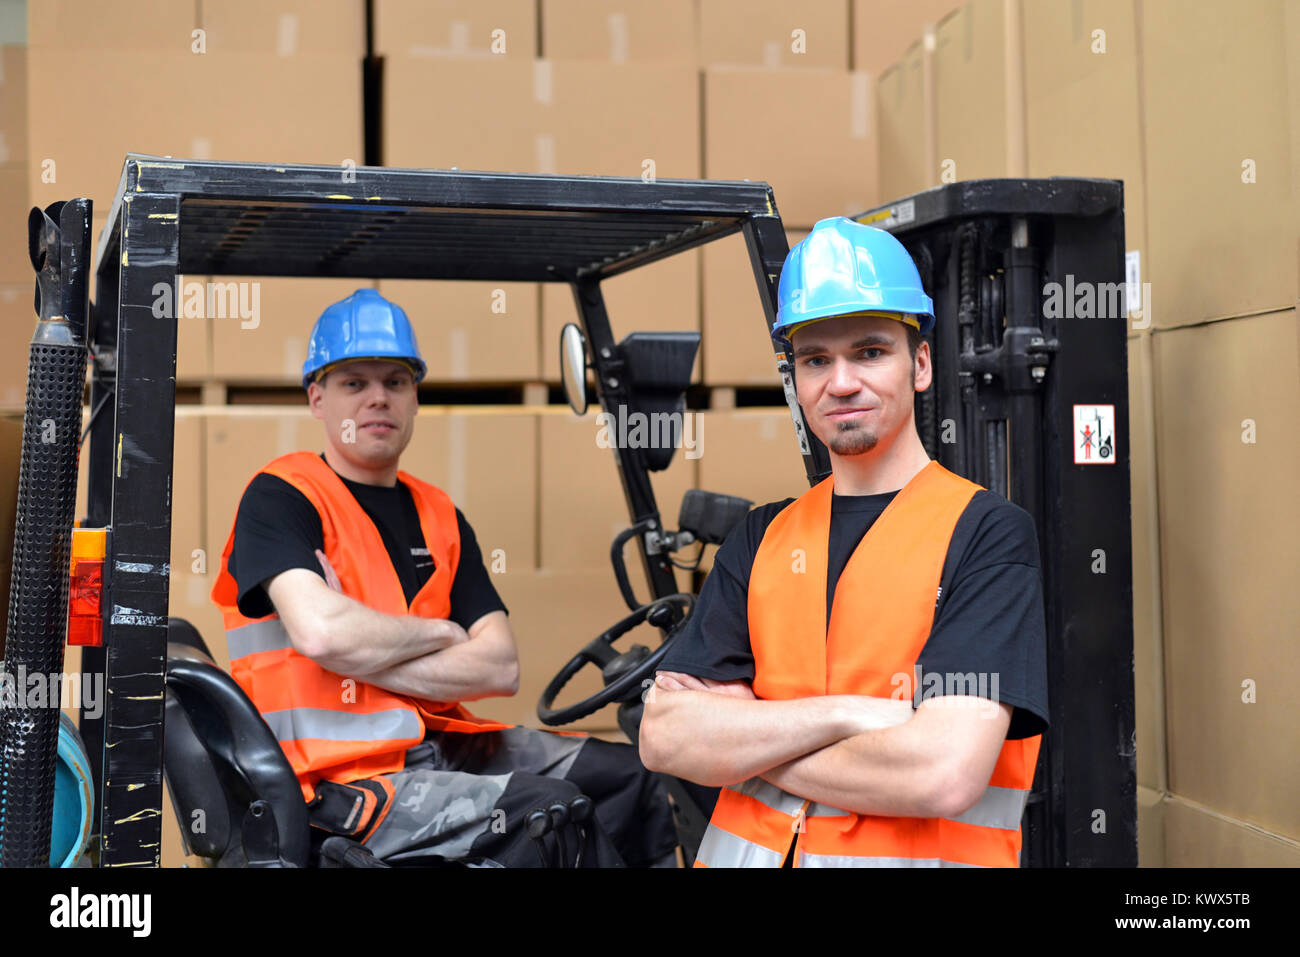 El trabajo en equipo en logística - grupo de trabajadores en una tienda por departamentos con carretillas elevadoras y mercancías Foto de stock